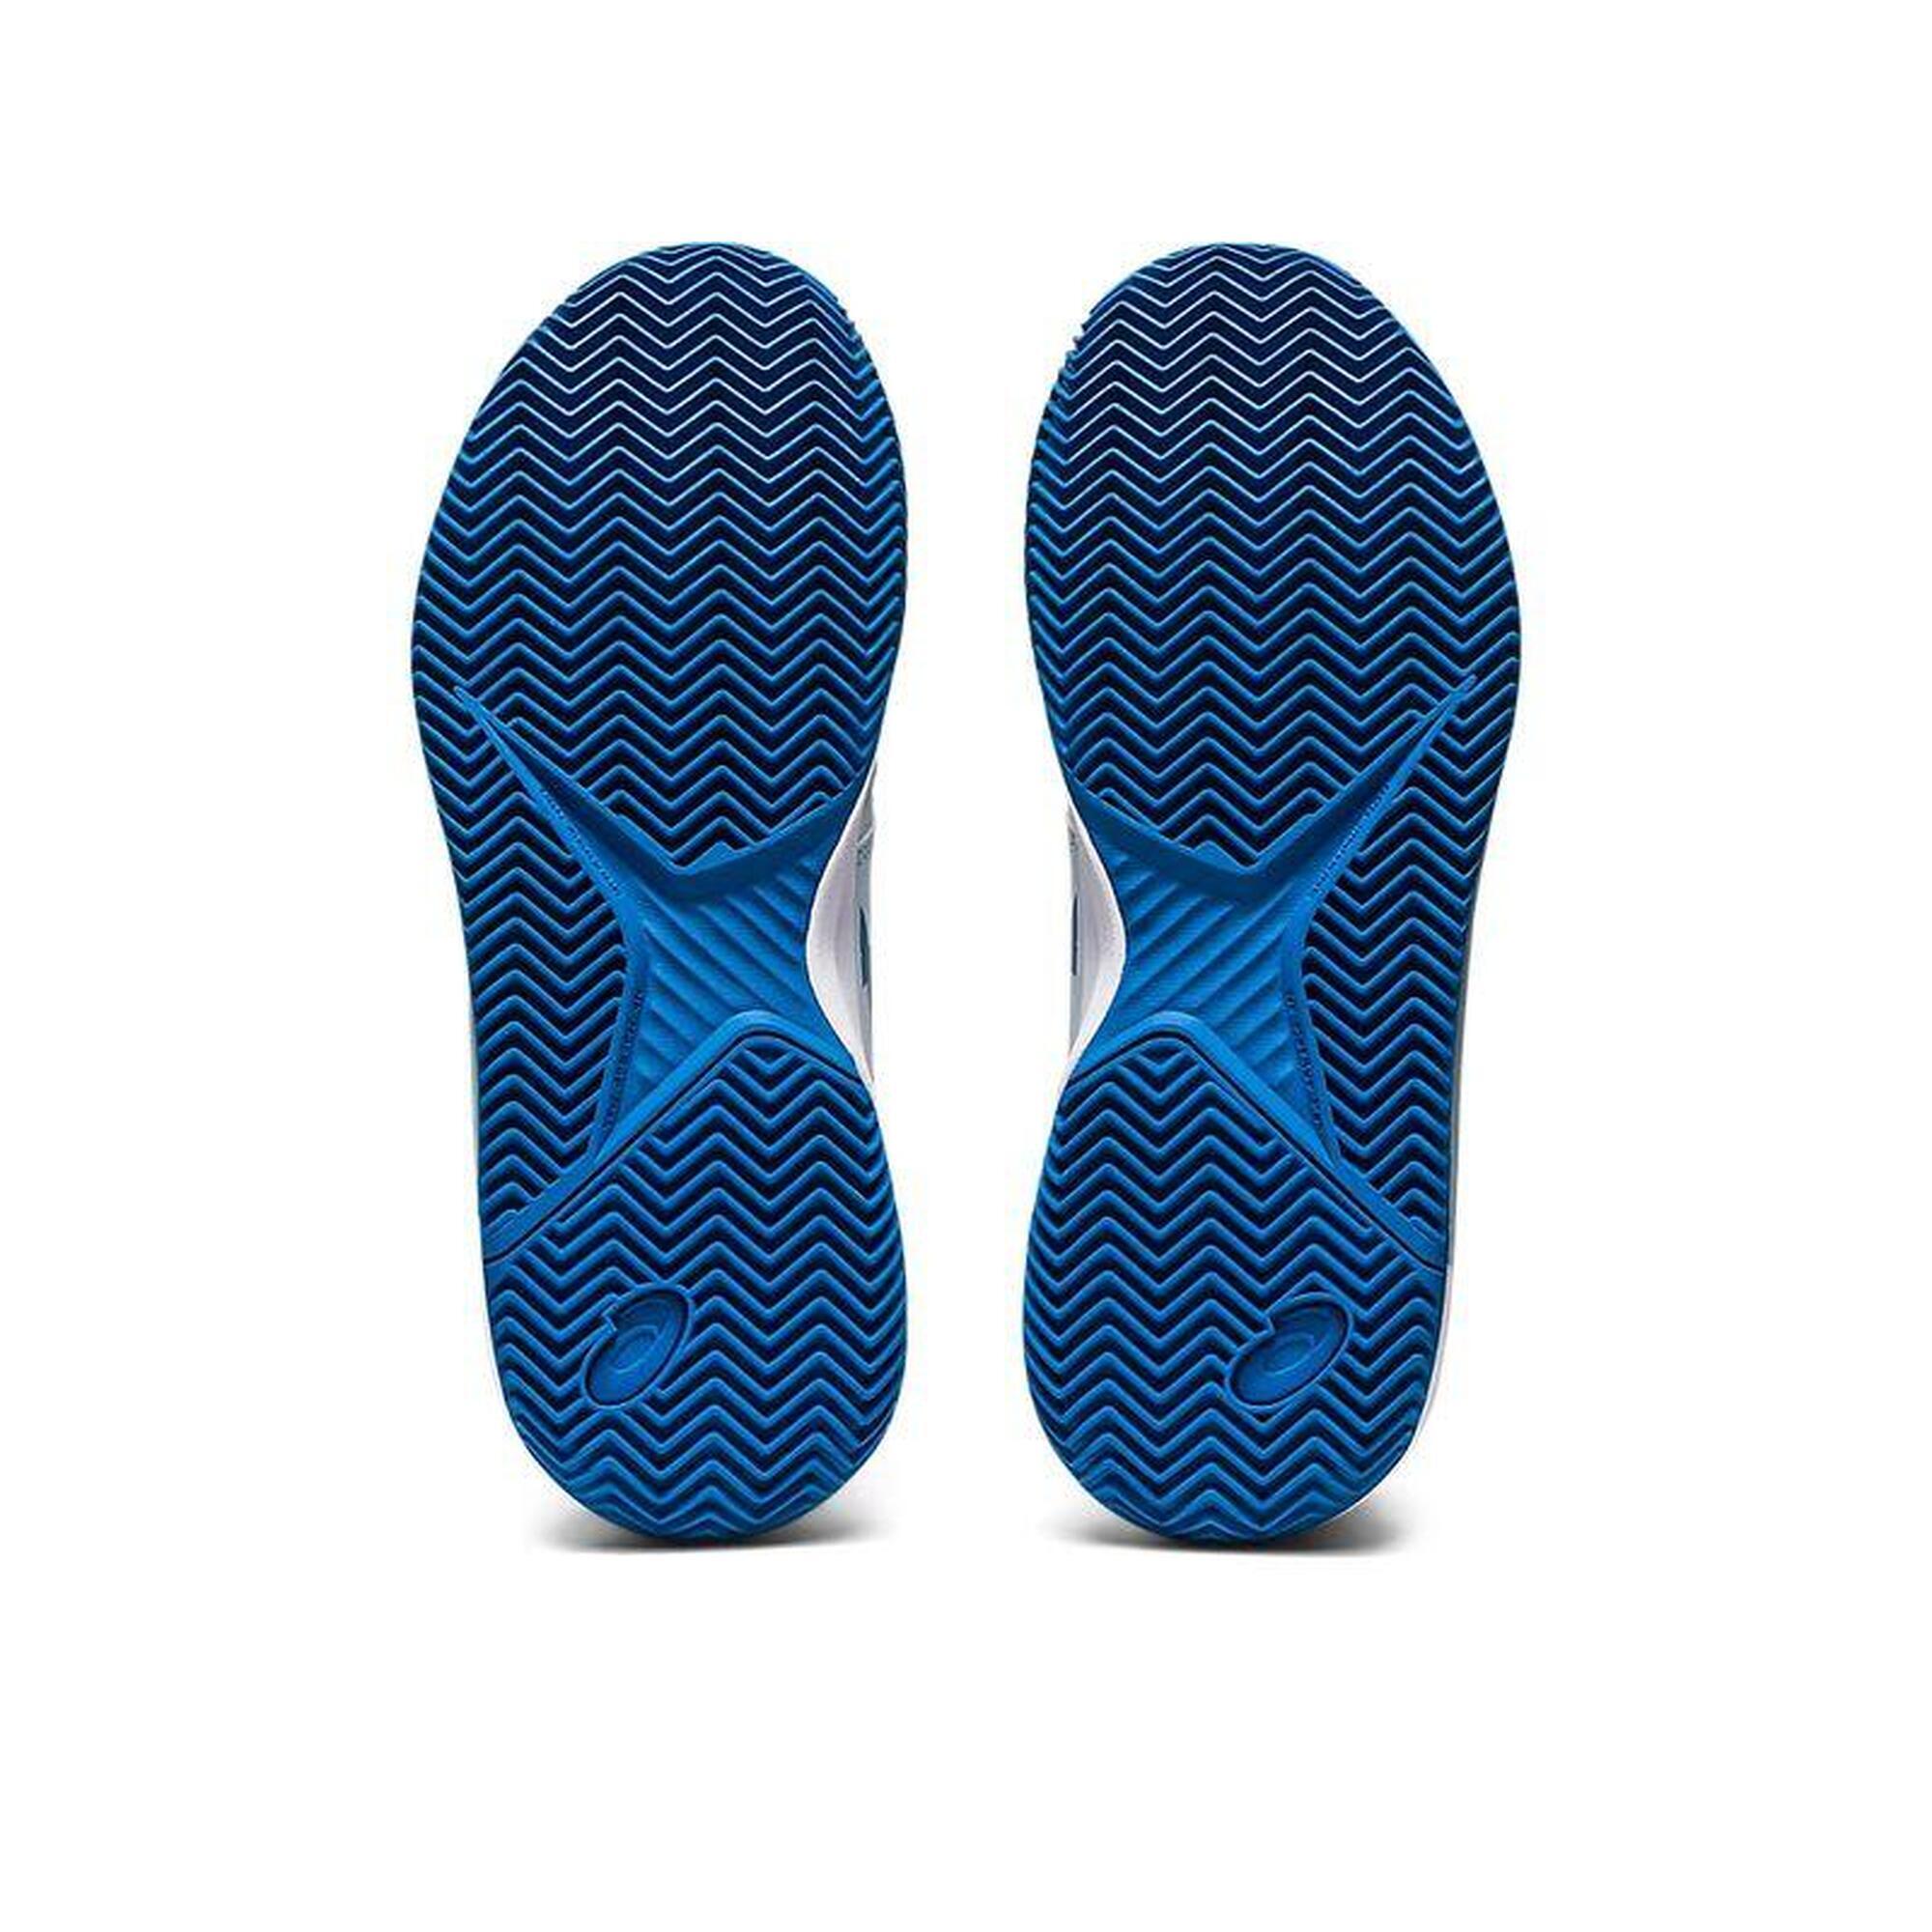 ASICS GEL-CHALLENGER 13 CLAY chaussures de tennis dames bleu